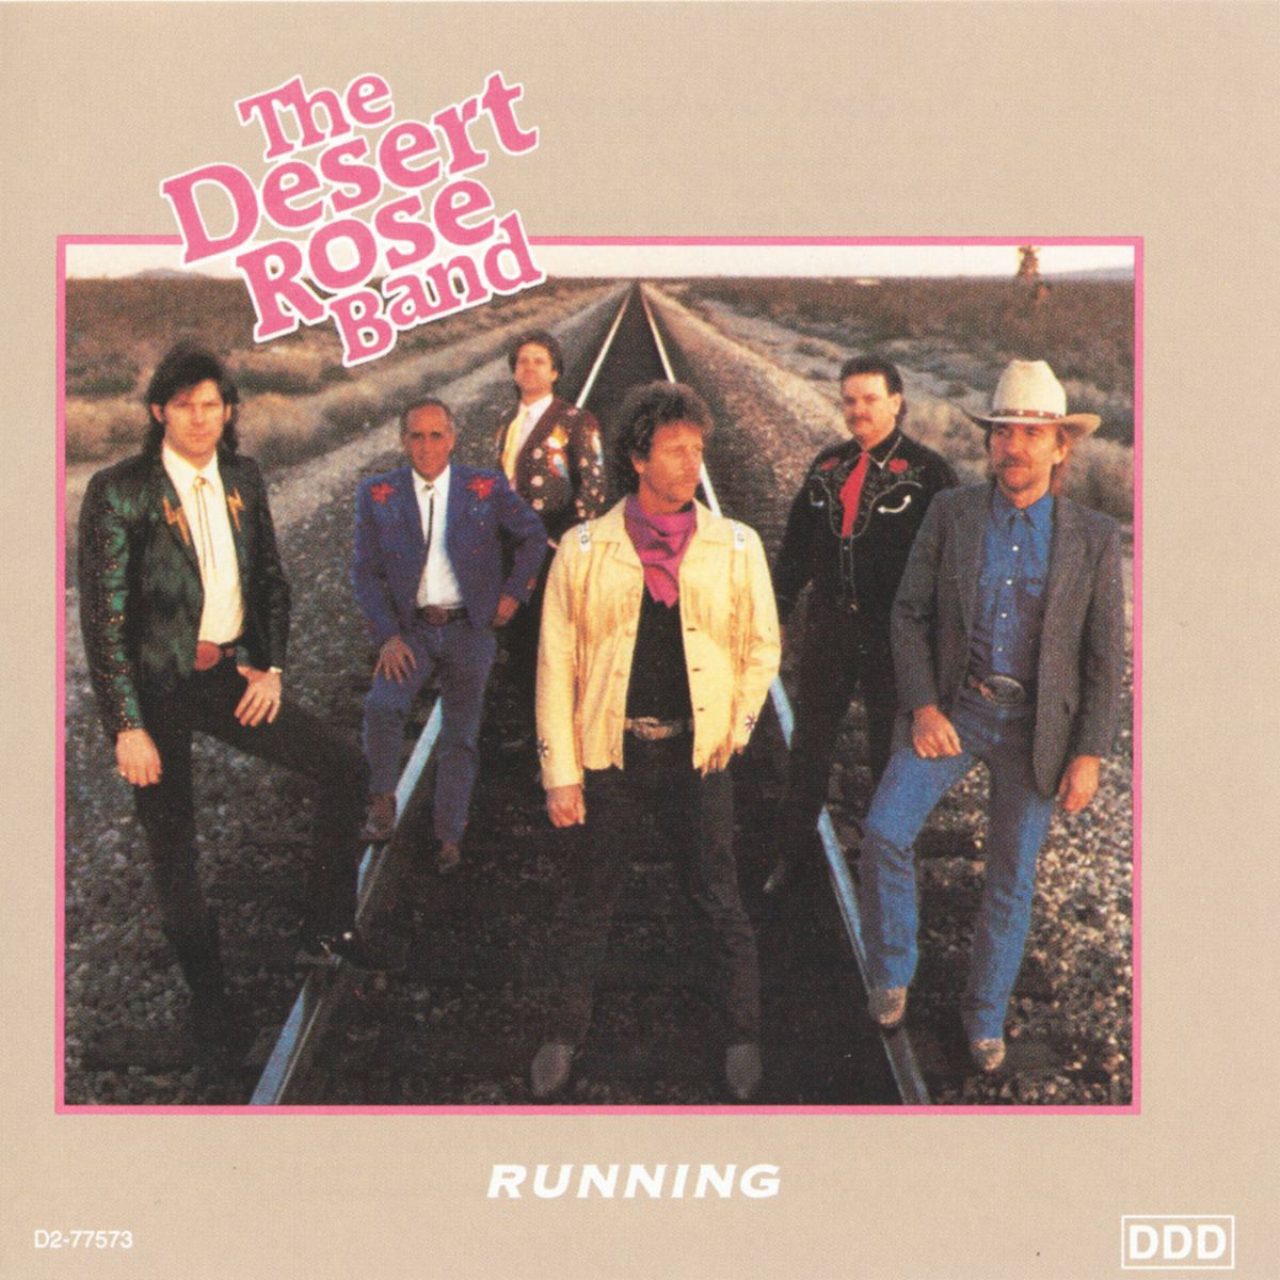 Desert Rose Band – Running cover album